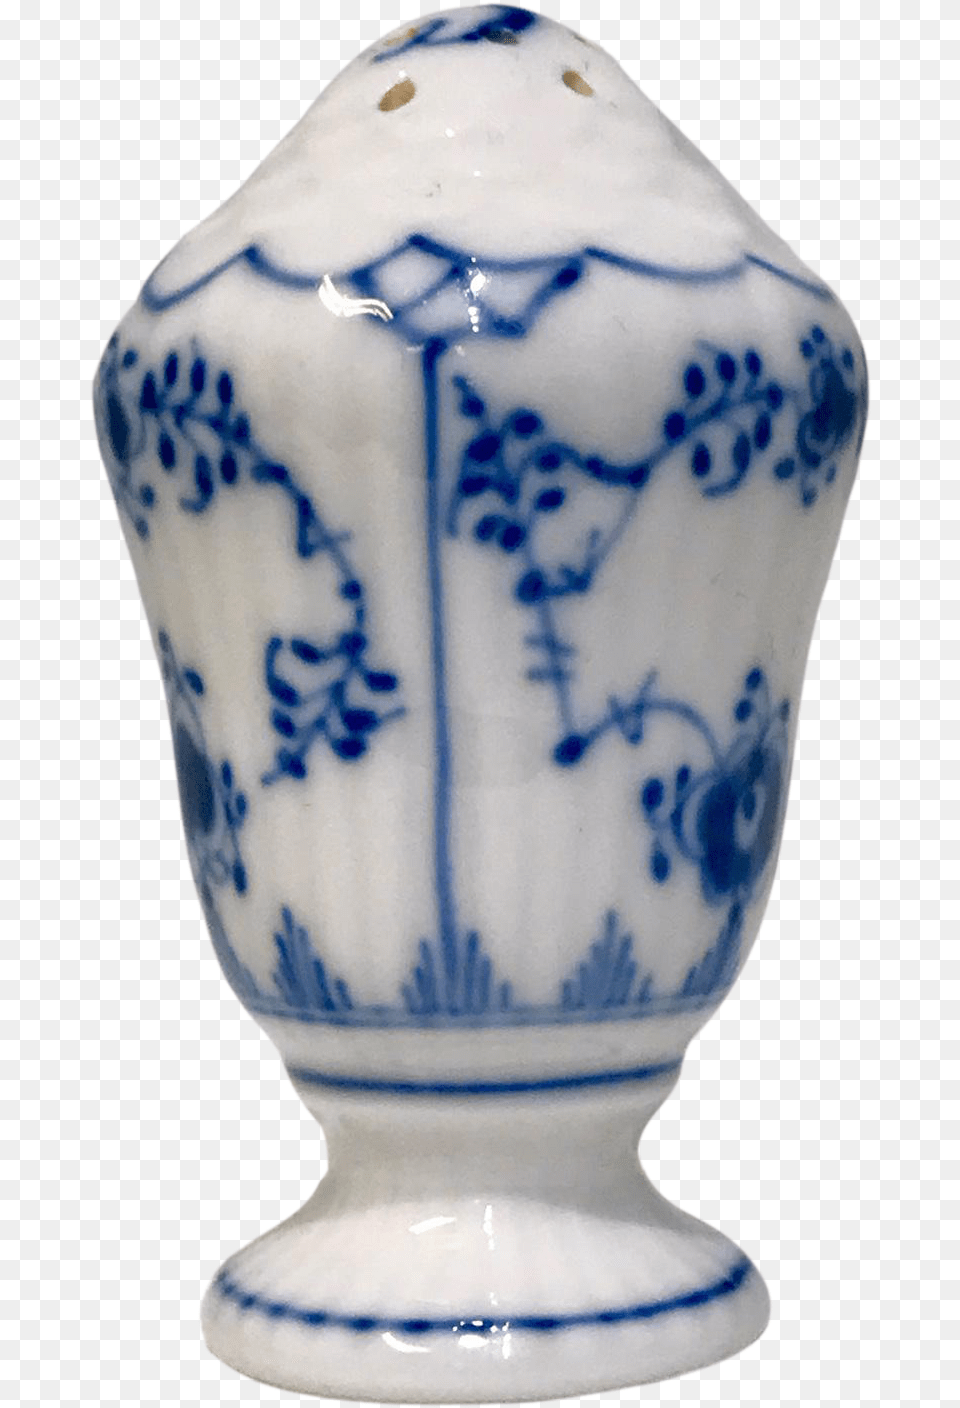 Salt Shaker, Art, Porcelain, Pottery, Jar Png Image